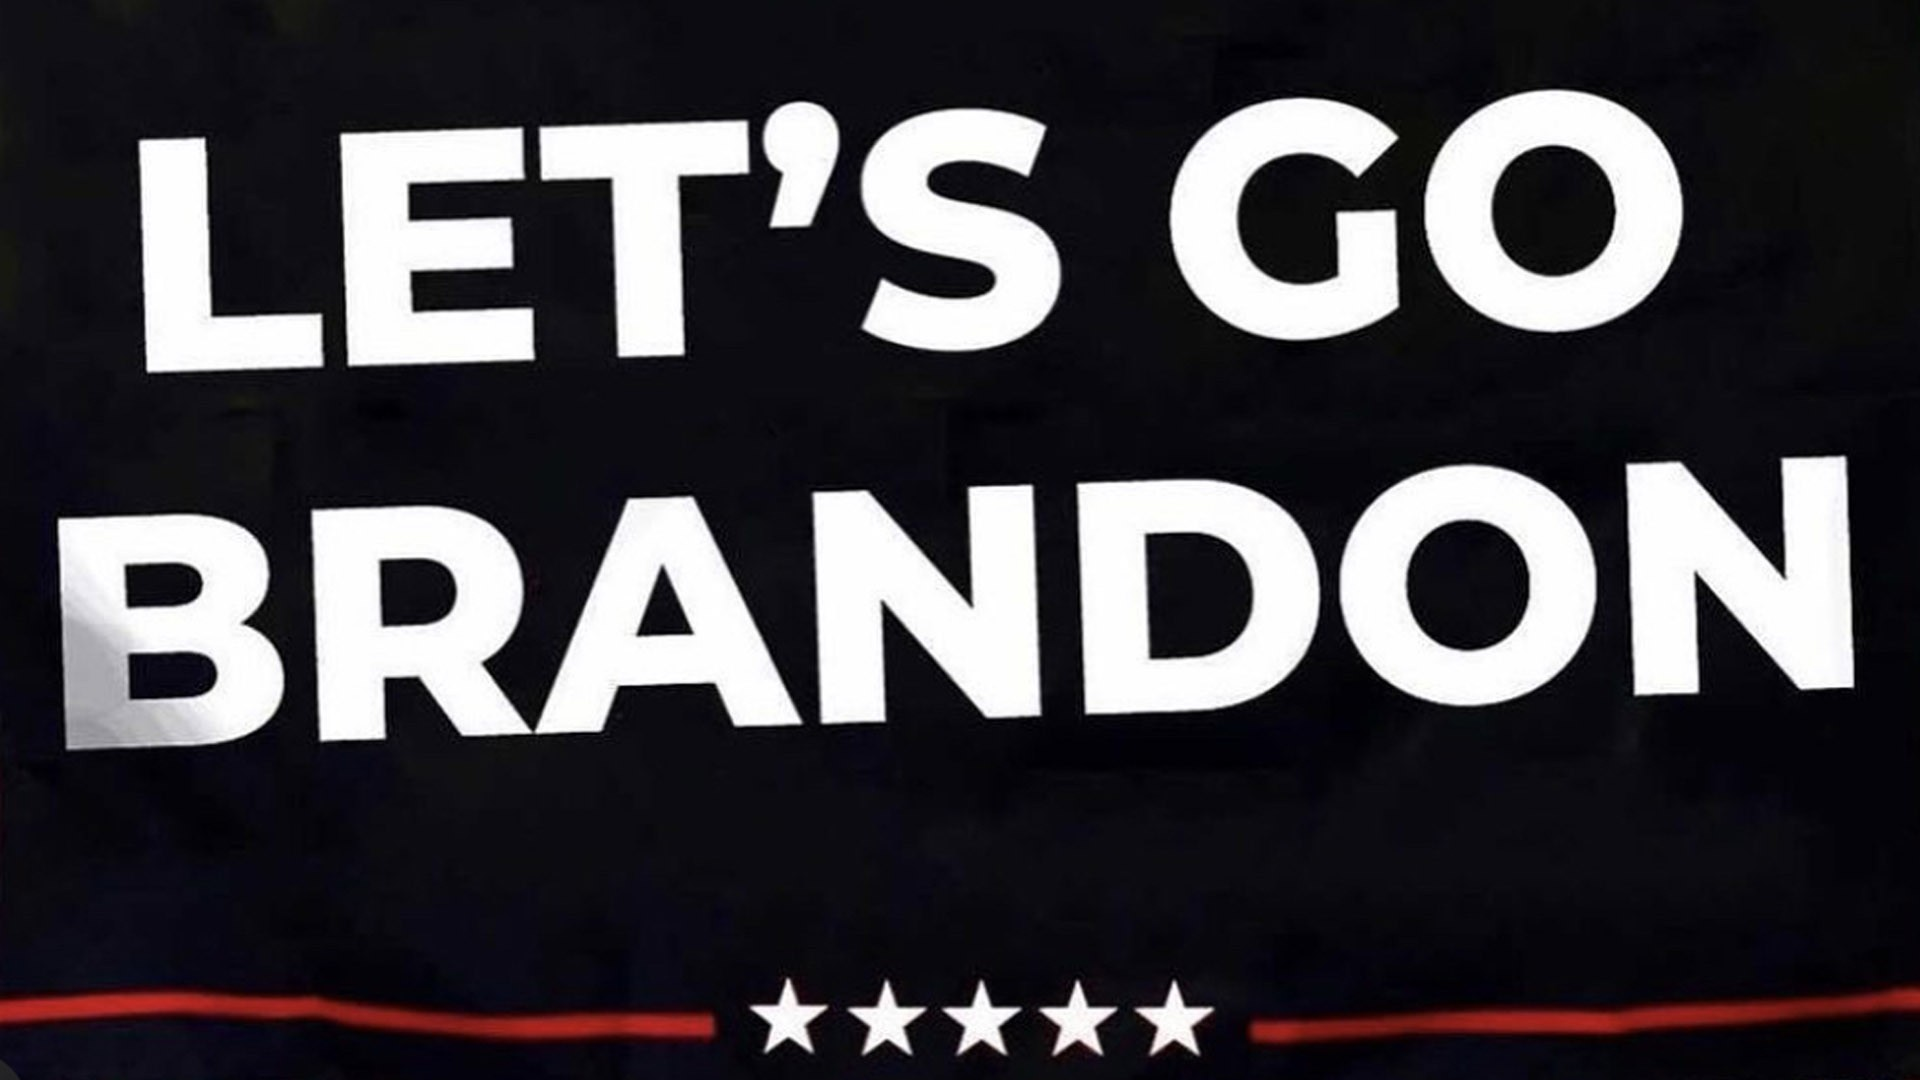 Os investidores entraram com uma ação judicial contra a NASCAR pela promoção do token "Let's Go Brandon" (LGB), alegando um esquema de bomba e despejo.